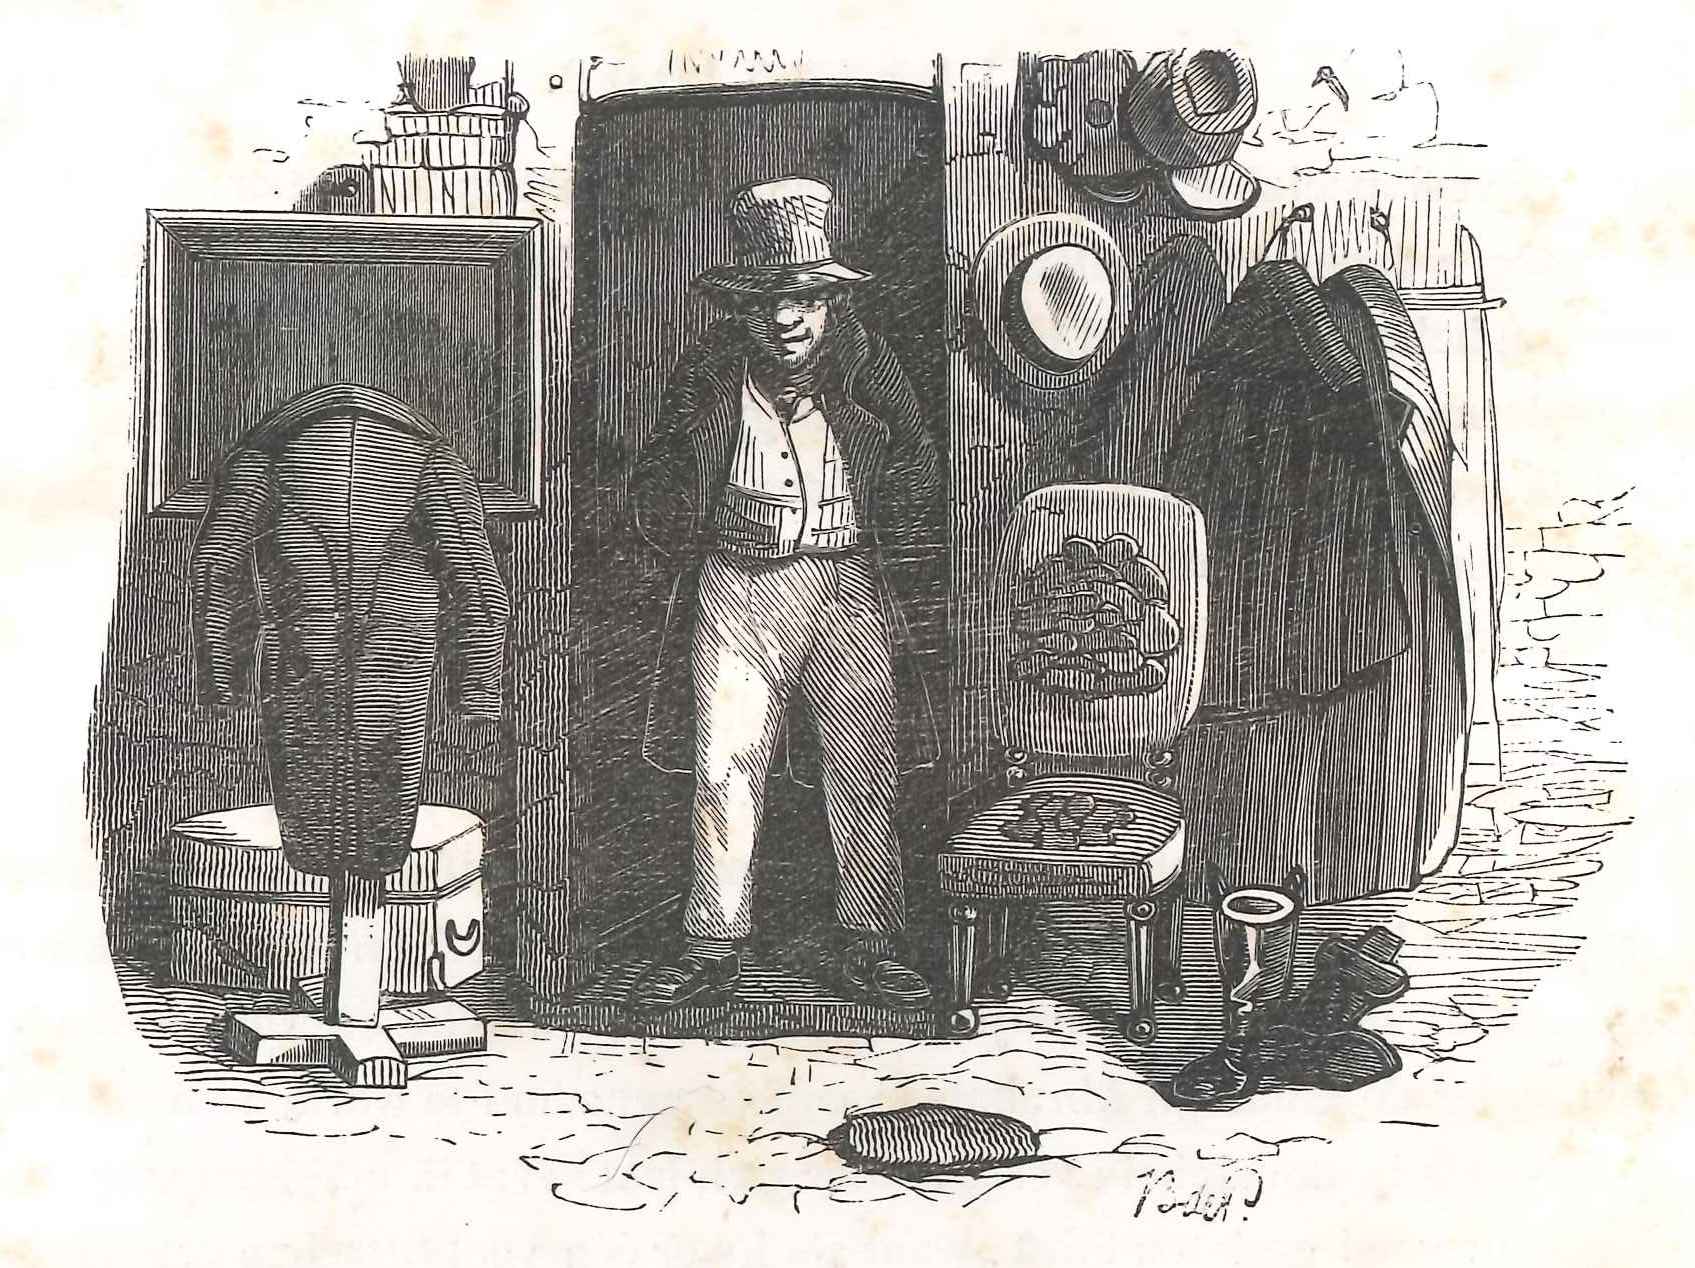 Verkoper van oude kleren, 'Karakterschets', 1841.